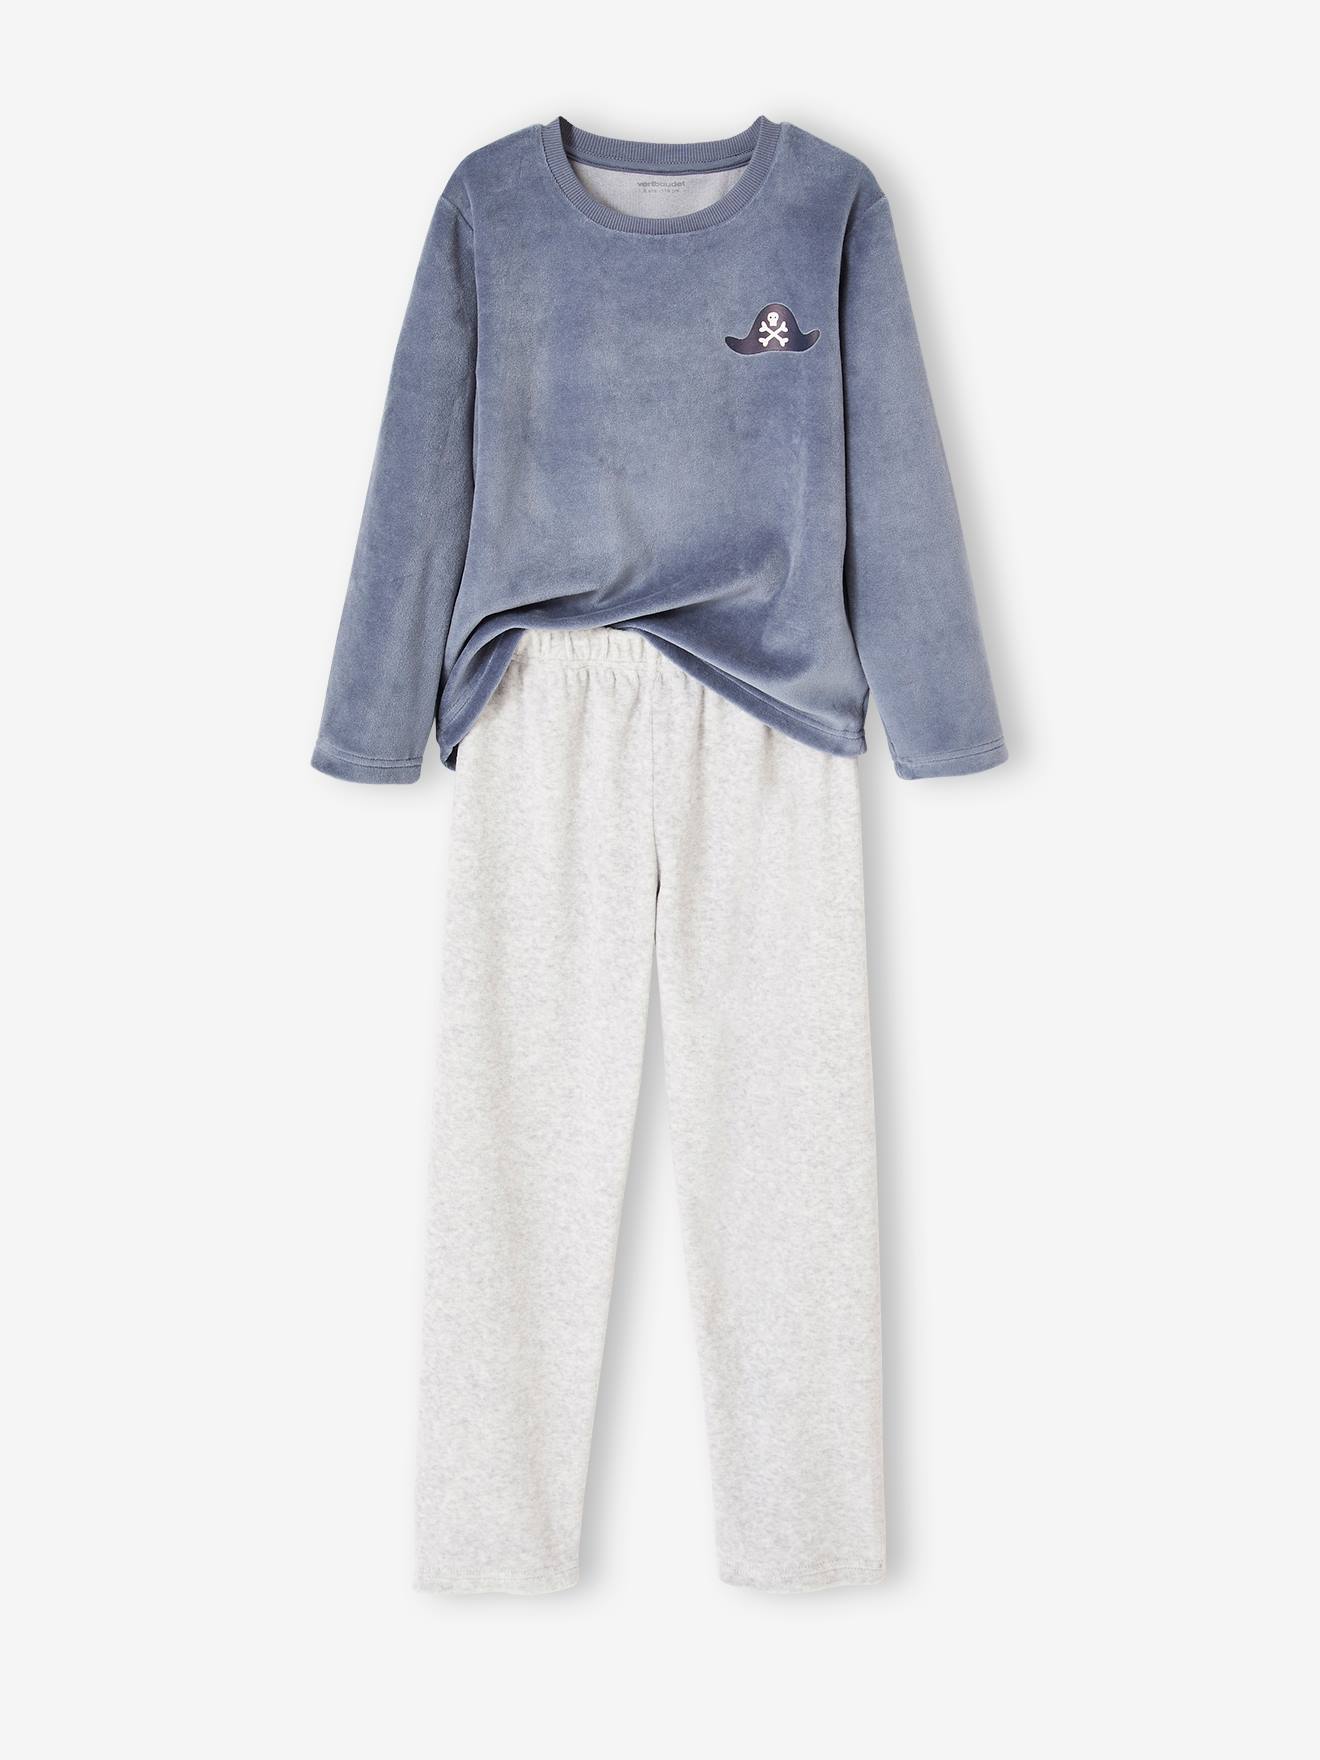 VERTBAUDETLot de 2 Pyjamas Nature en Velours garçonLOT Bleu ET GRIS4A :  : Mode